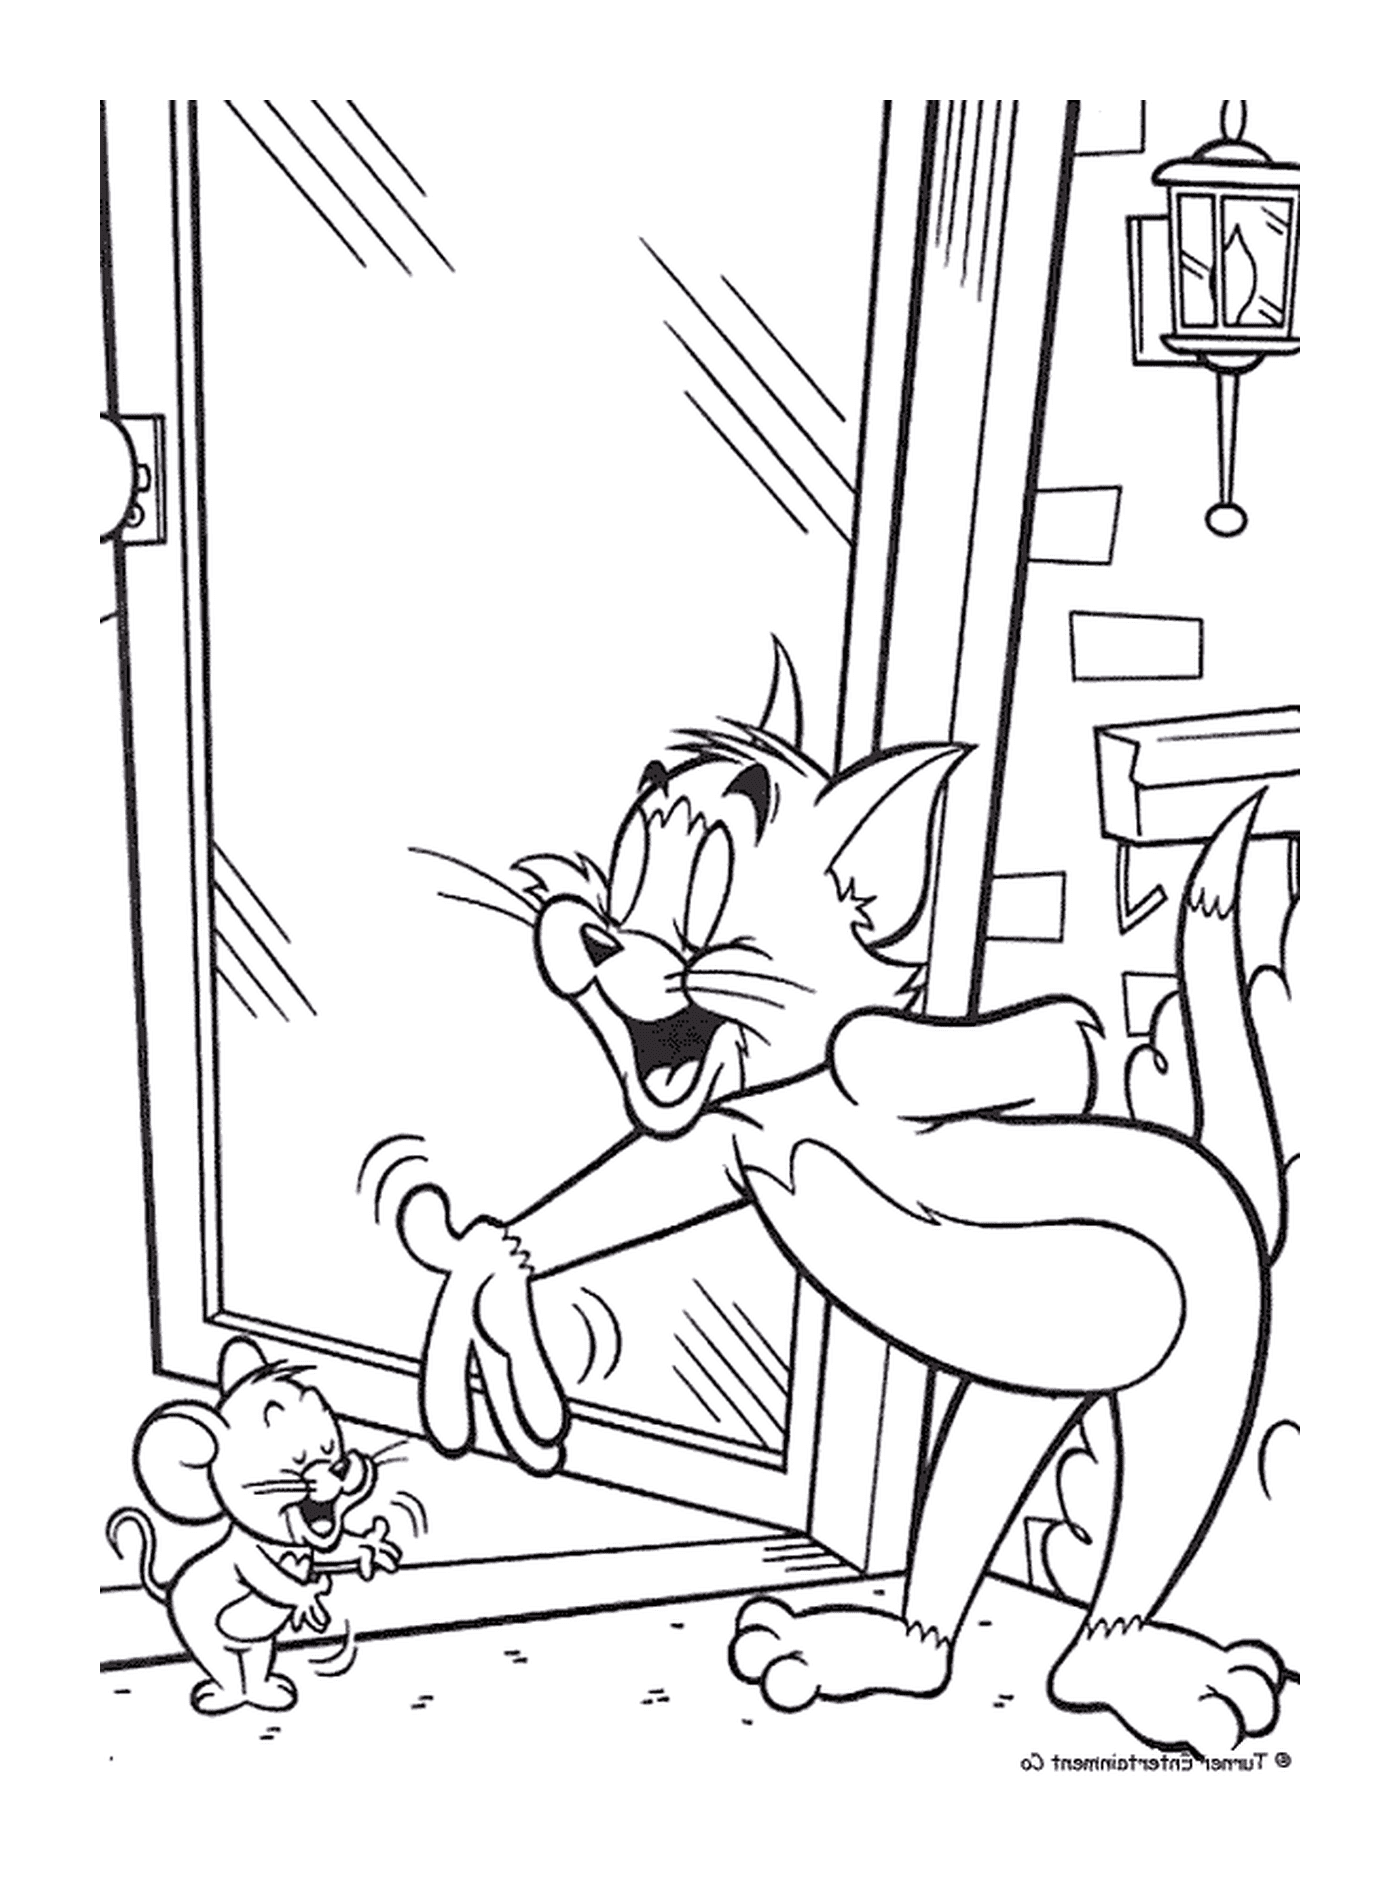 Tom et Jerry se font des politesses